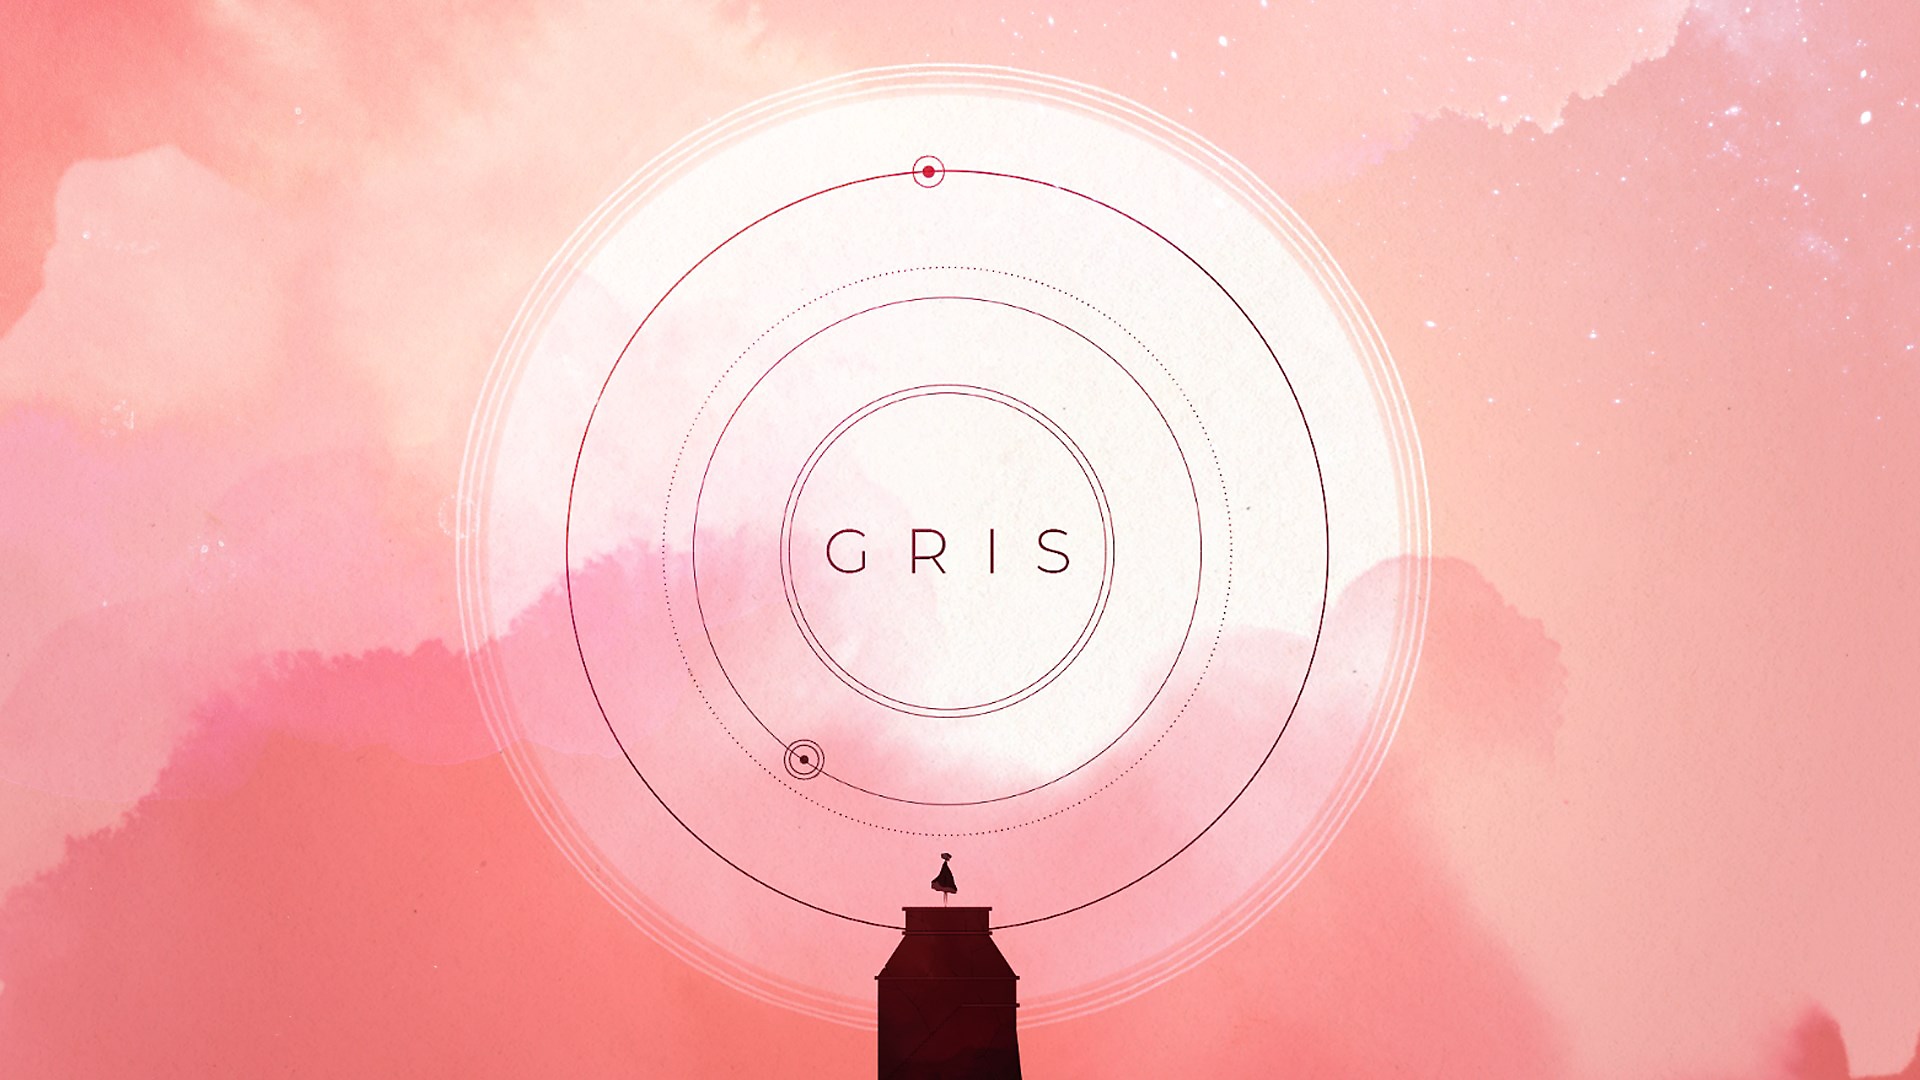 Gris PS5 launch trailer